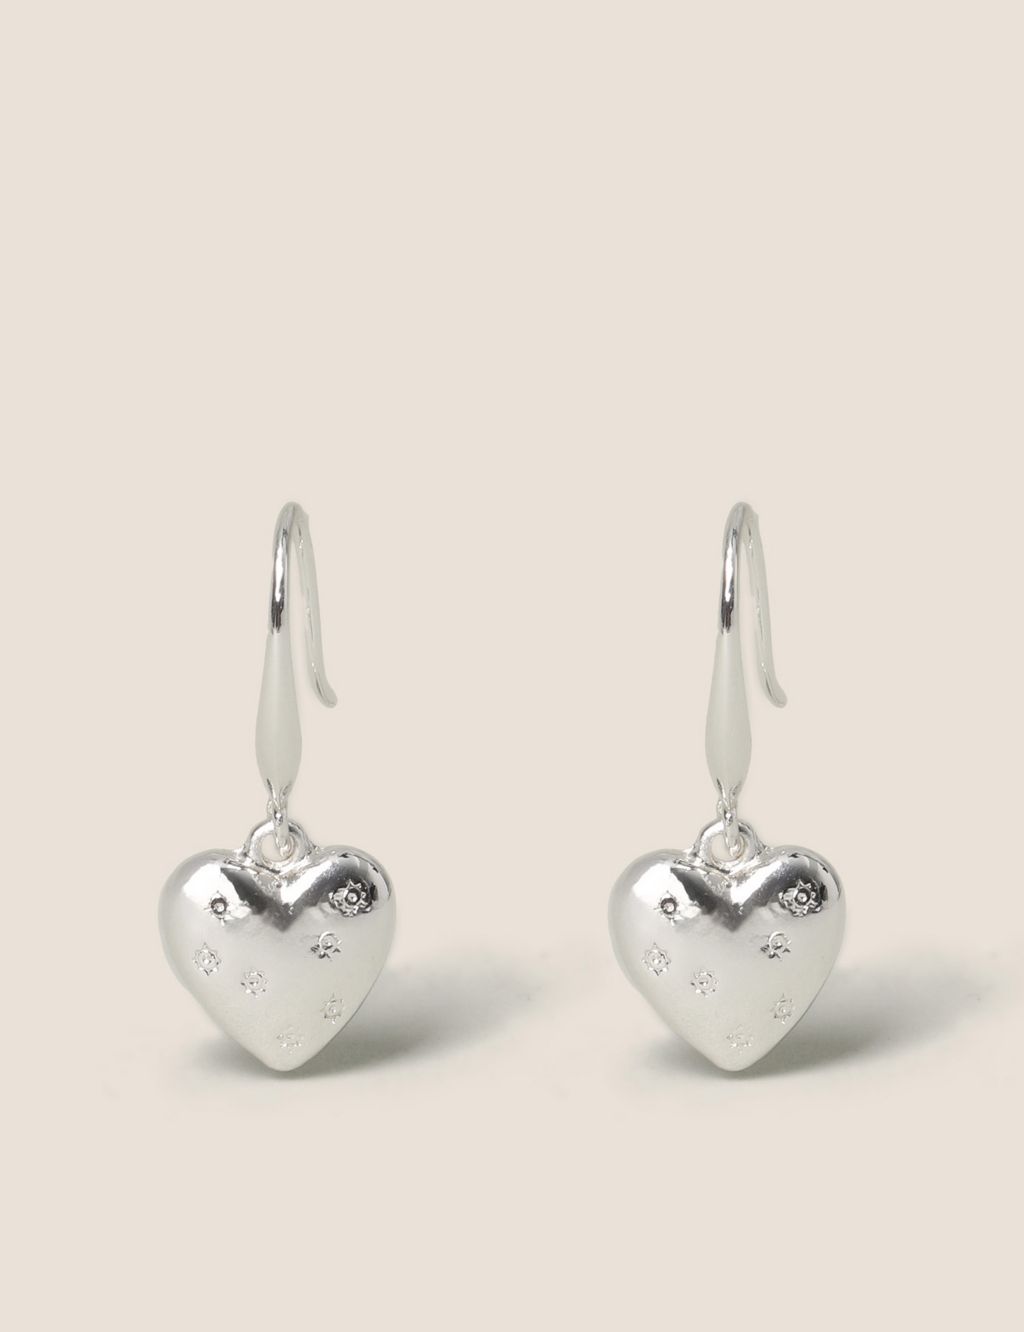 Silver Plated Heart Earrings